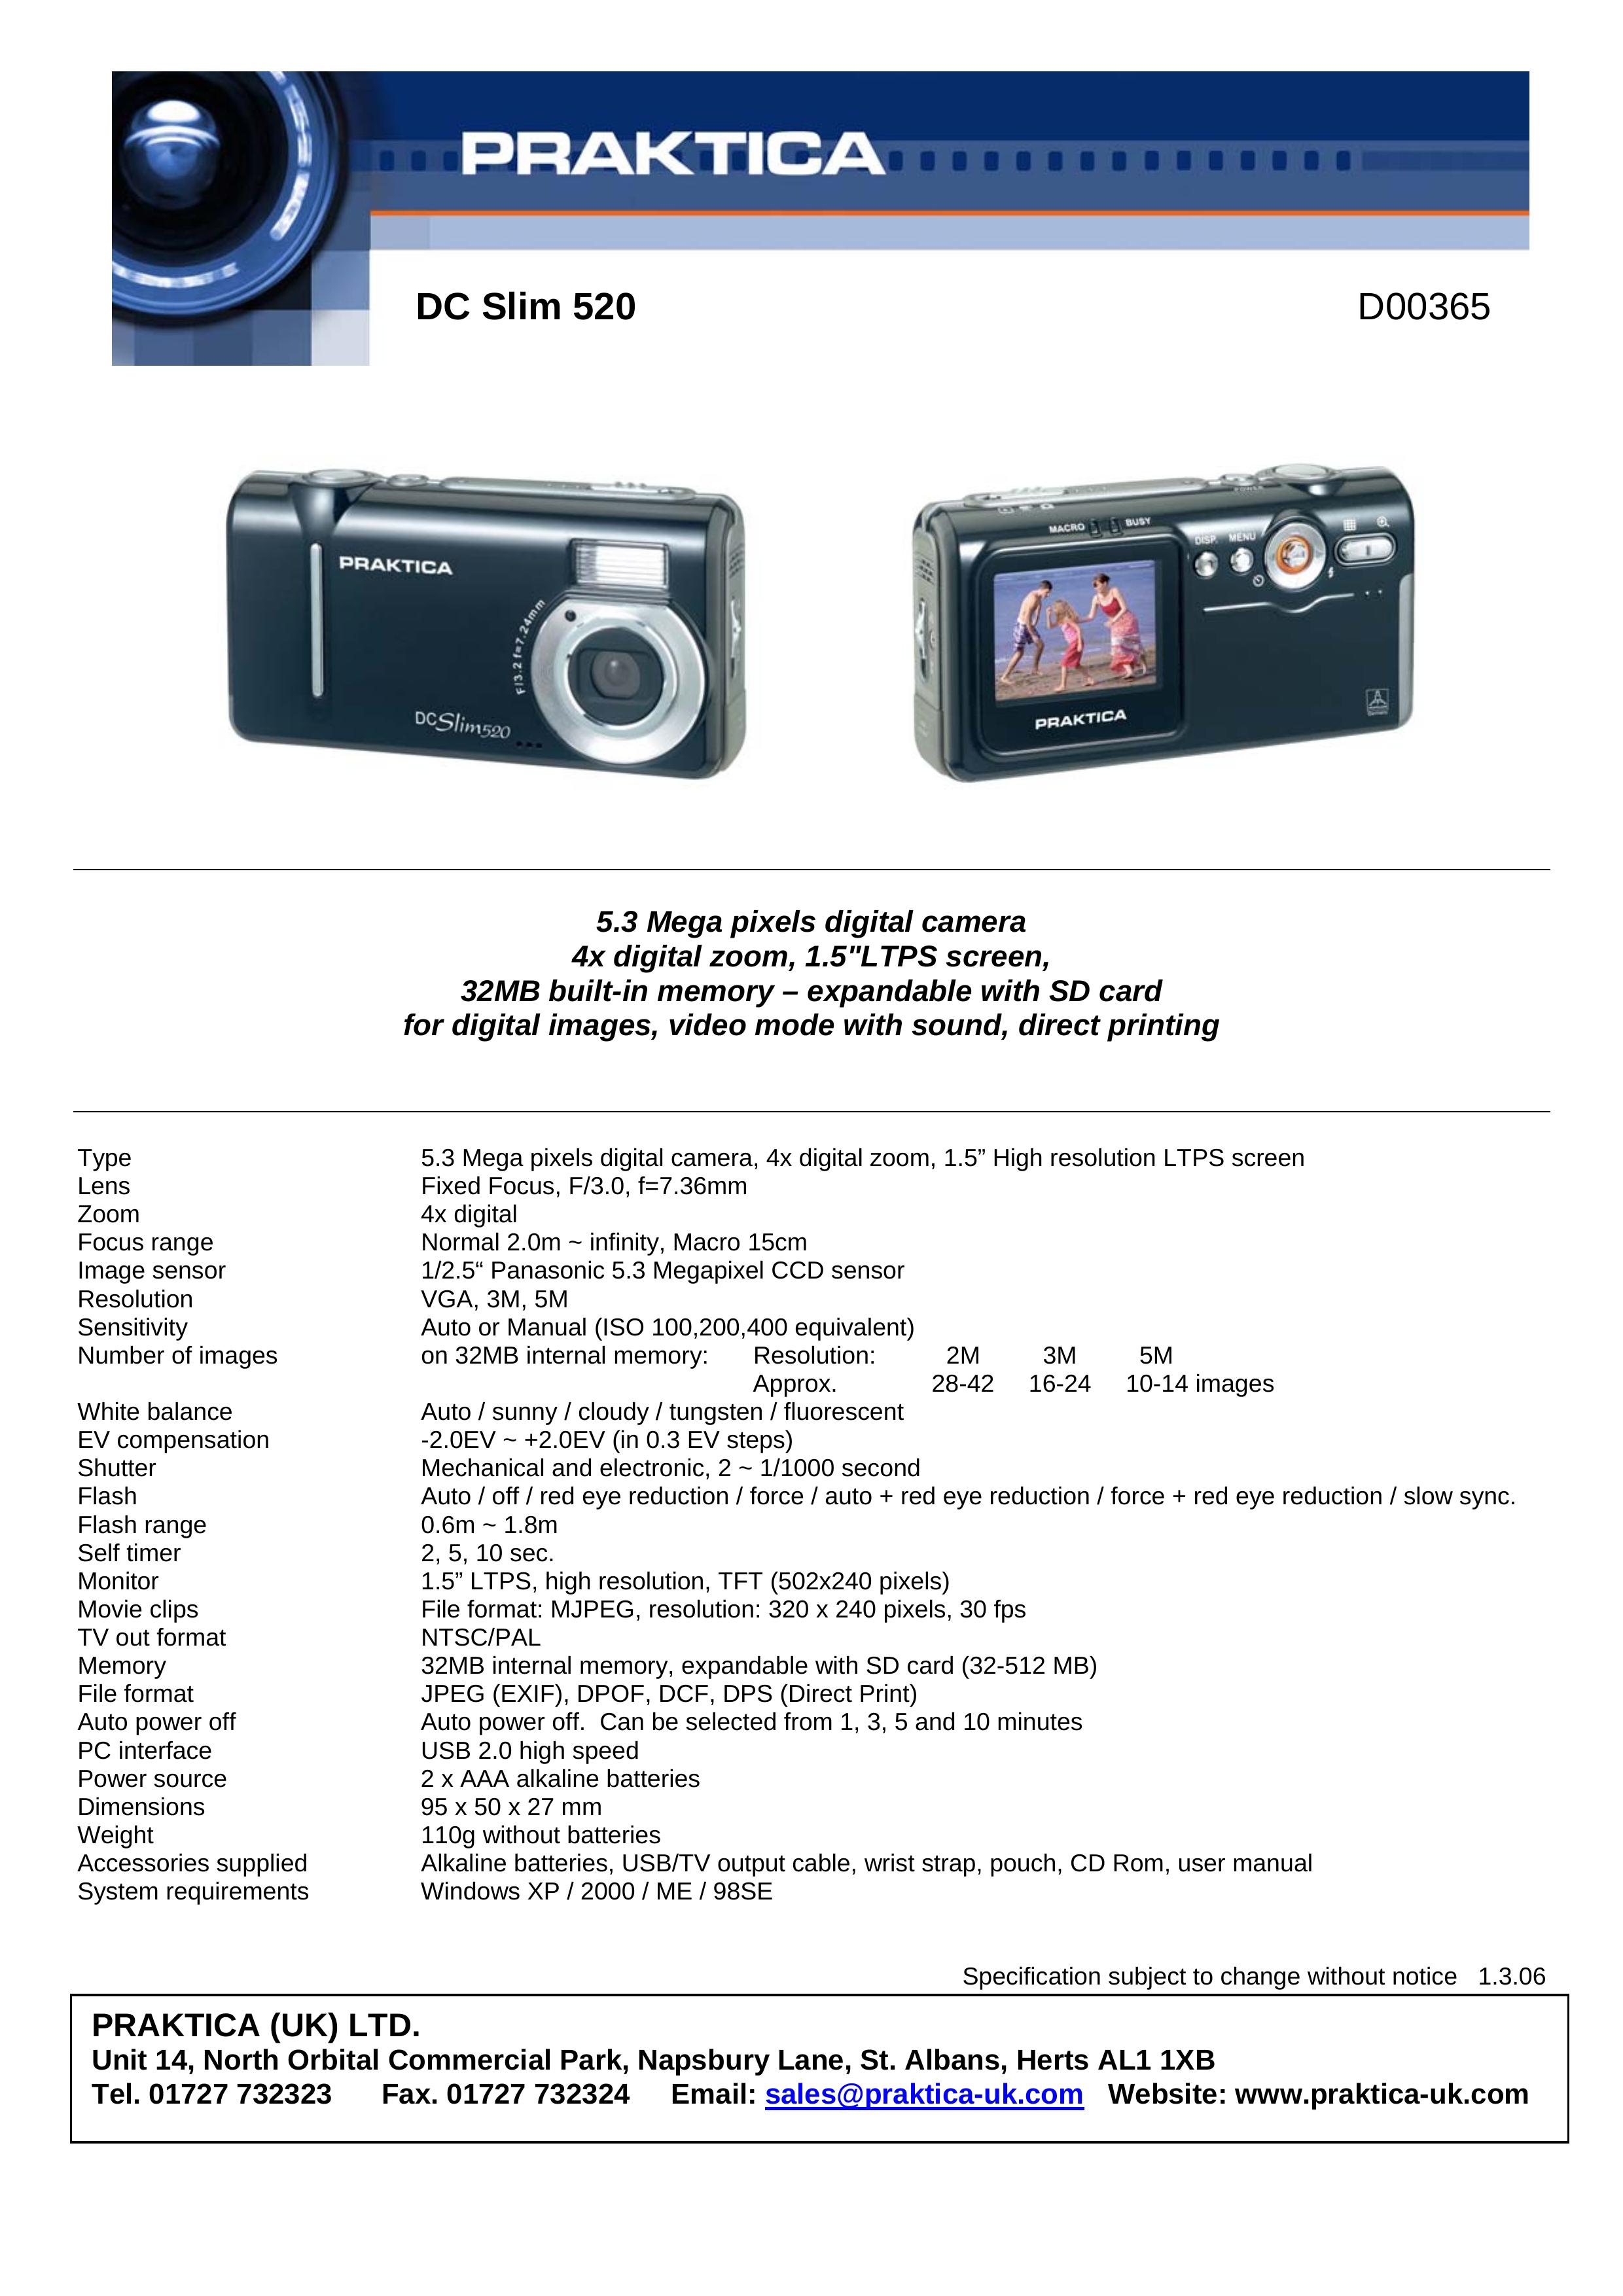 Praktica DC Slim 520 Digital Camera User Manual